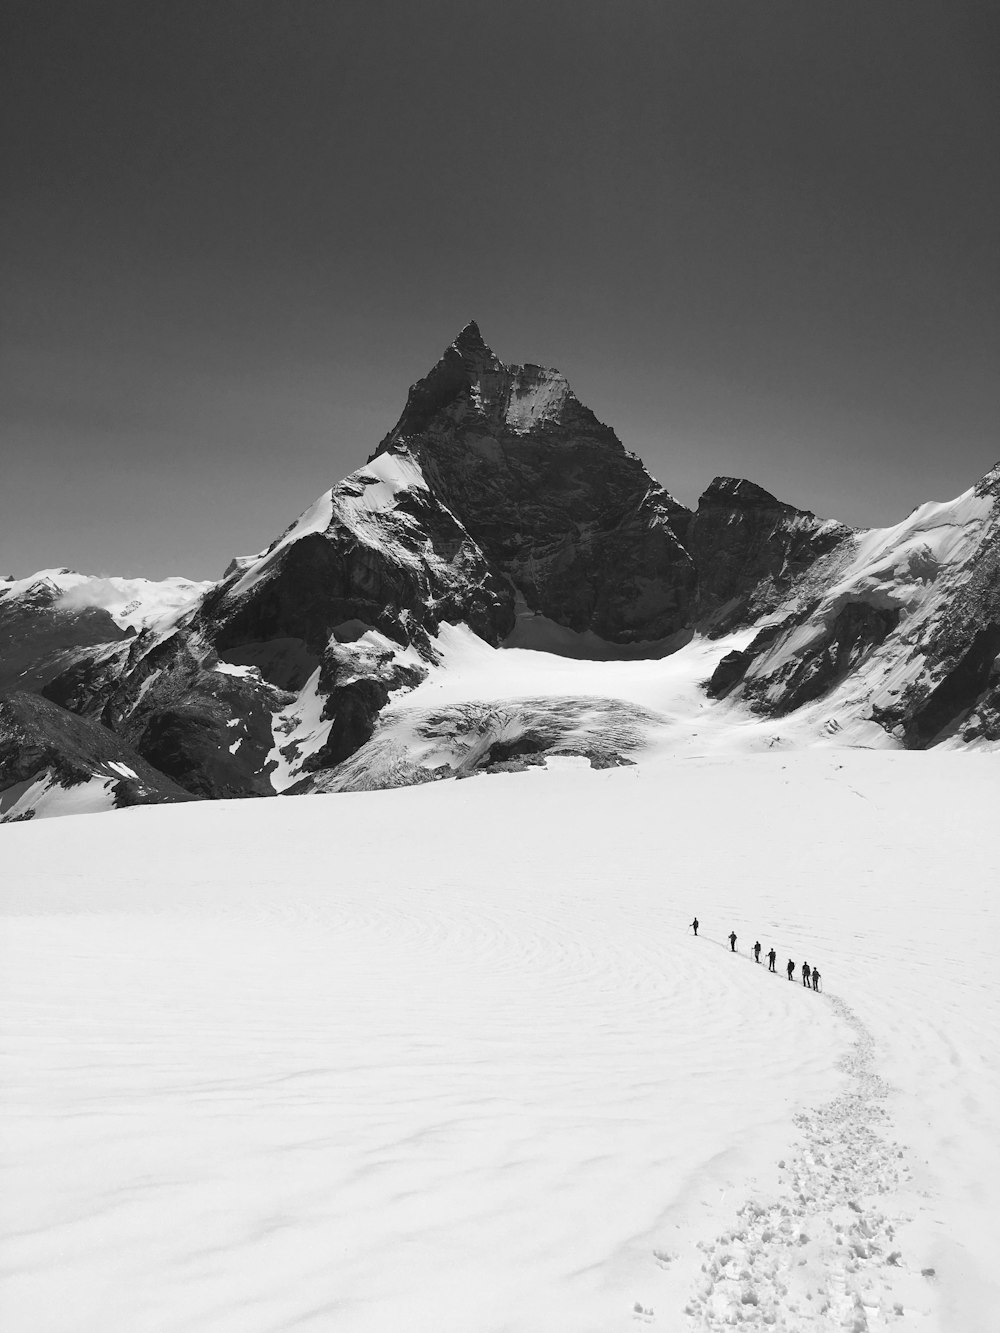 foto en escala de grises de una montaña cubierta de nieve